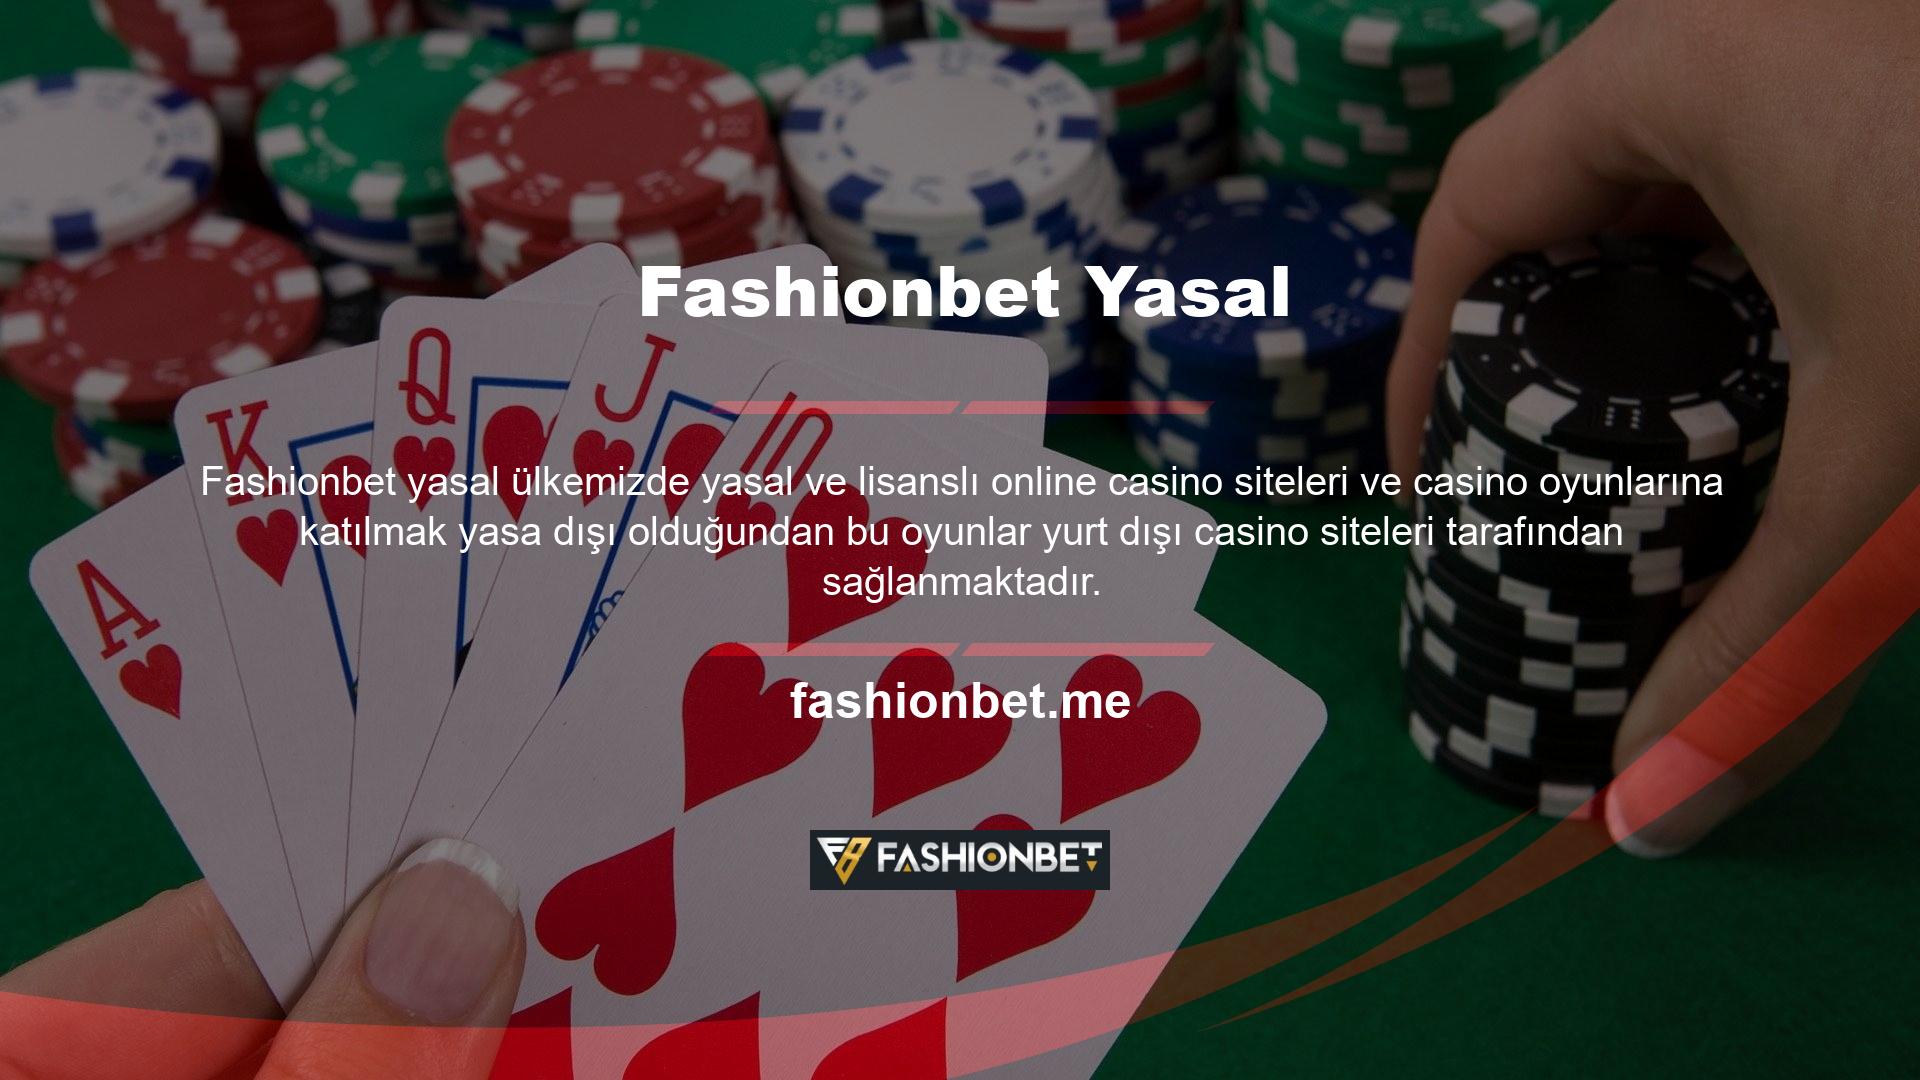 Yabancı casino şirketleri ülkemizdeki durumu dikkate alarak Türkiye'de casino siteleri tasarlamaktadır